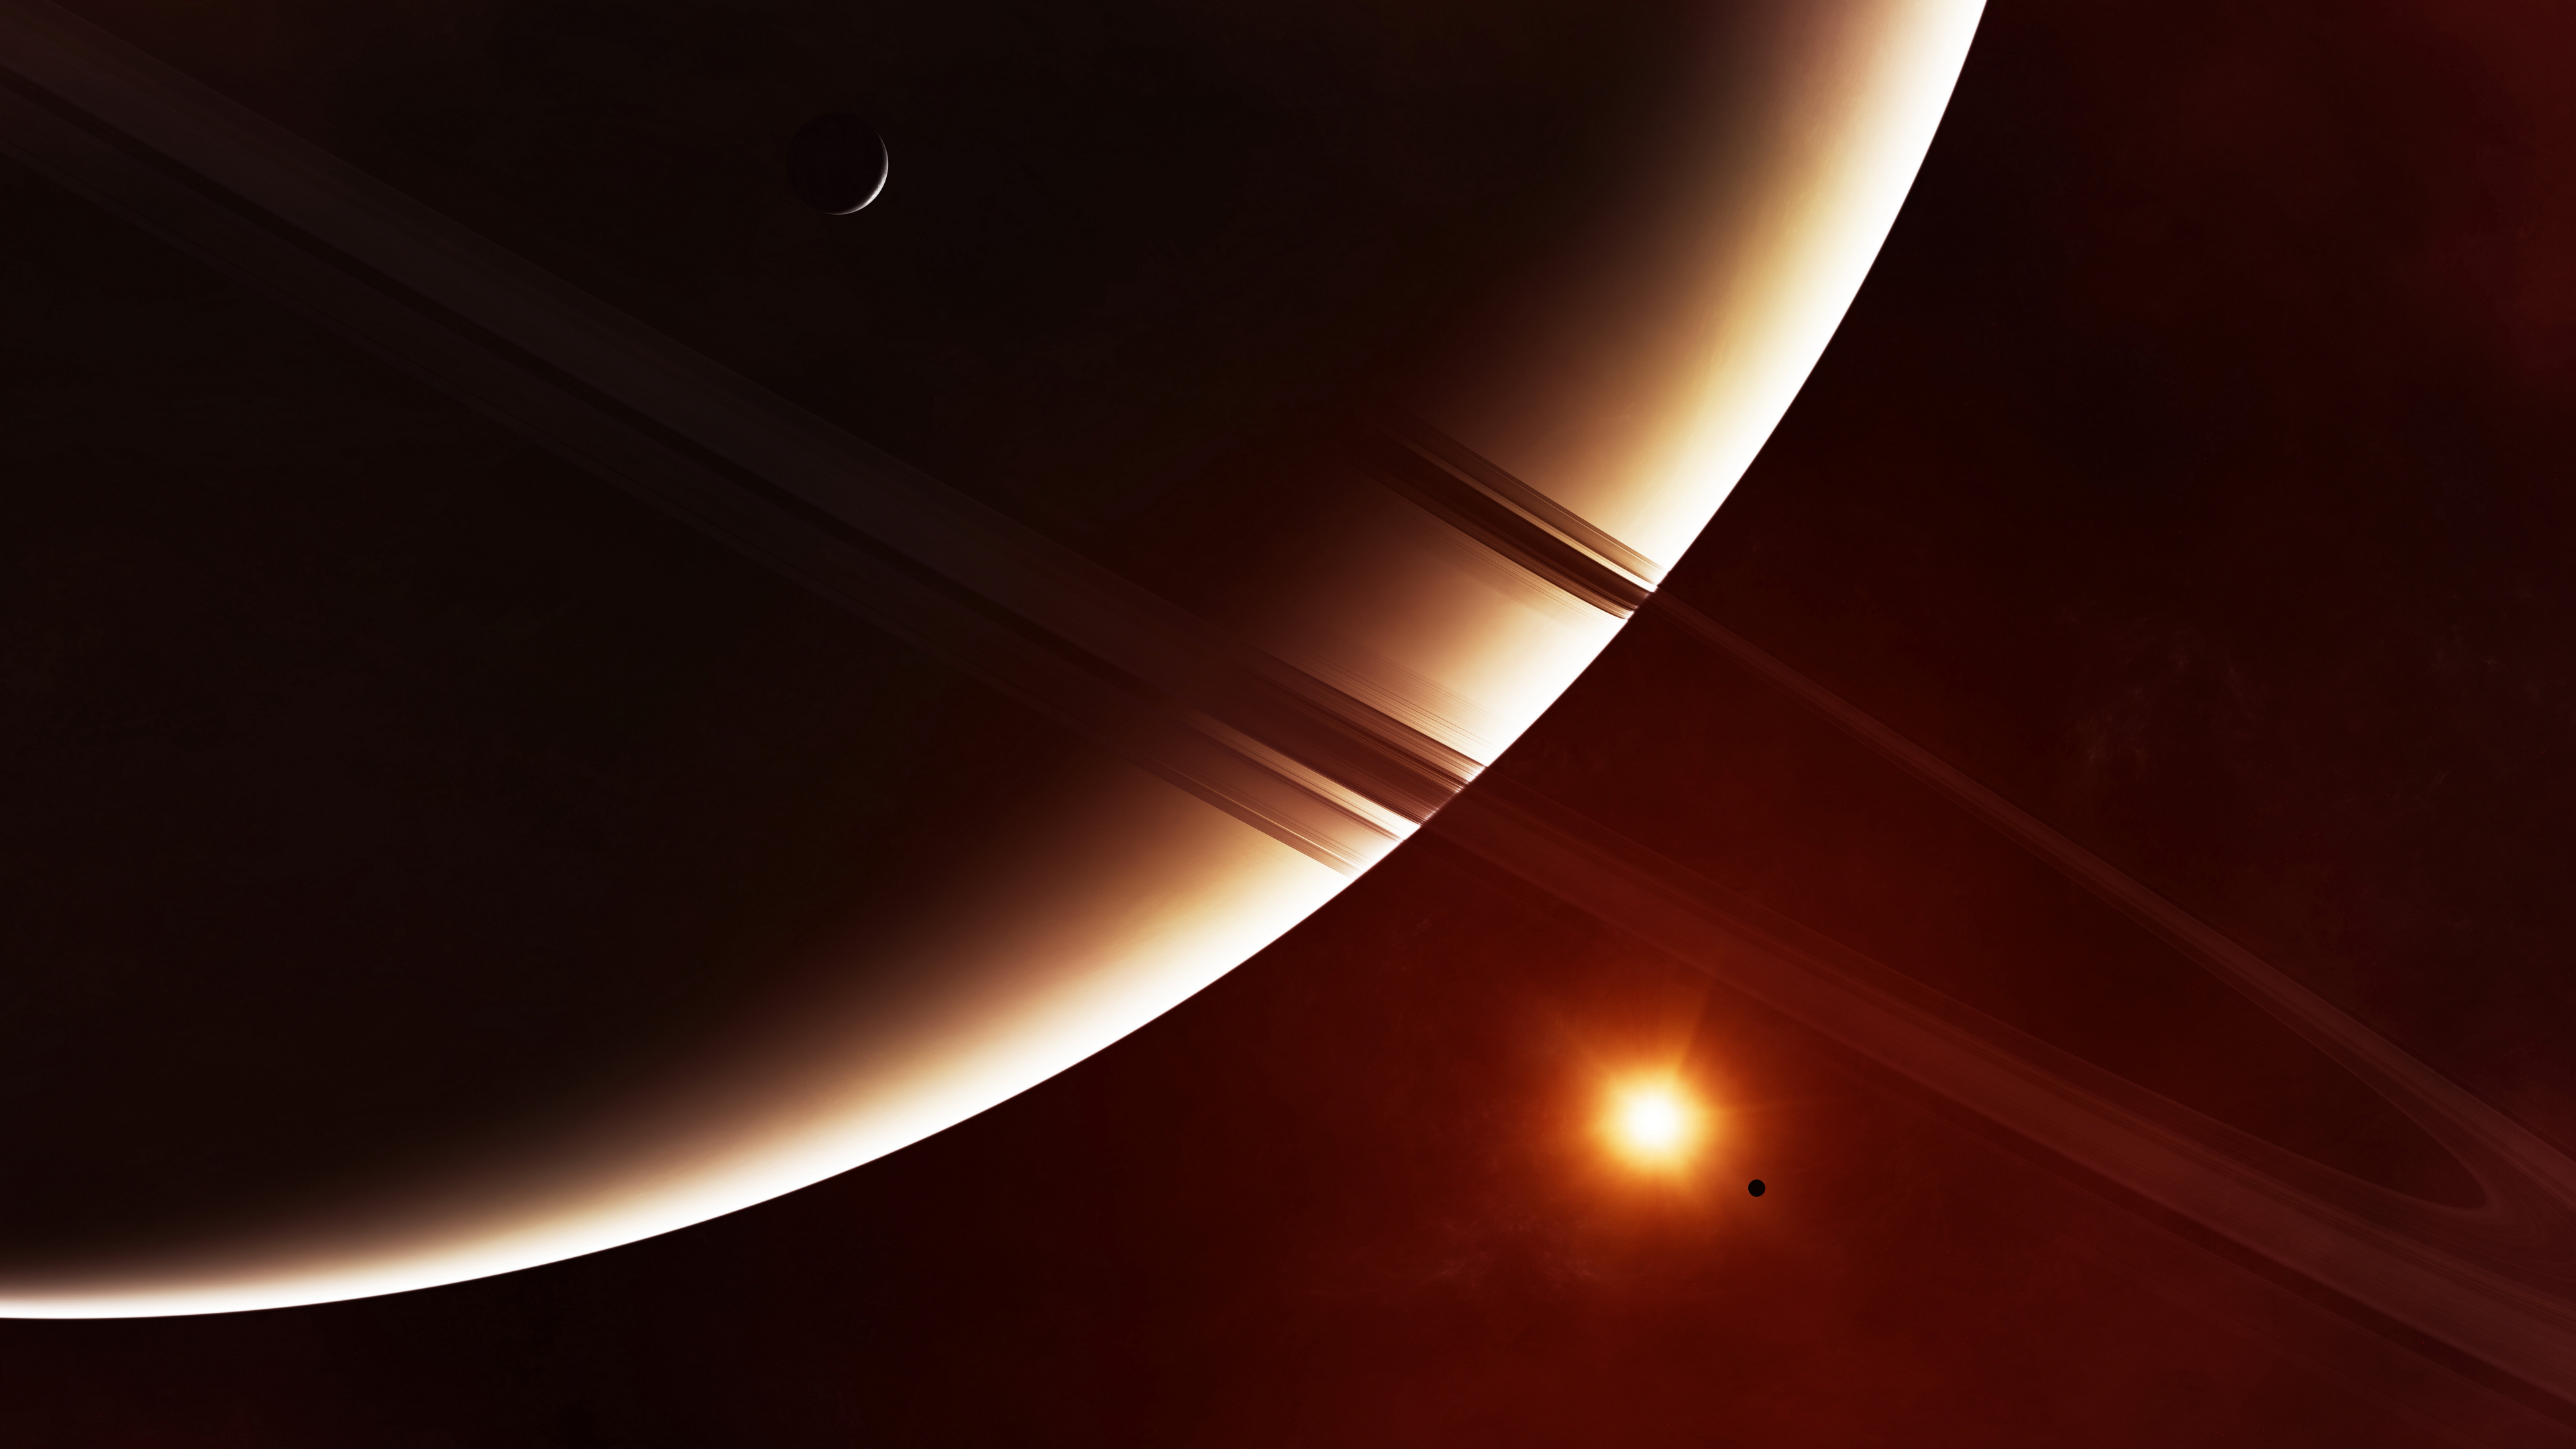 环系统, 土星, 这个星球, 天文学对象, 光 壁纸 3840x2160 允许